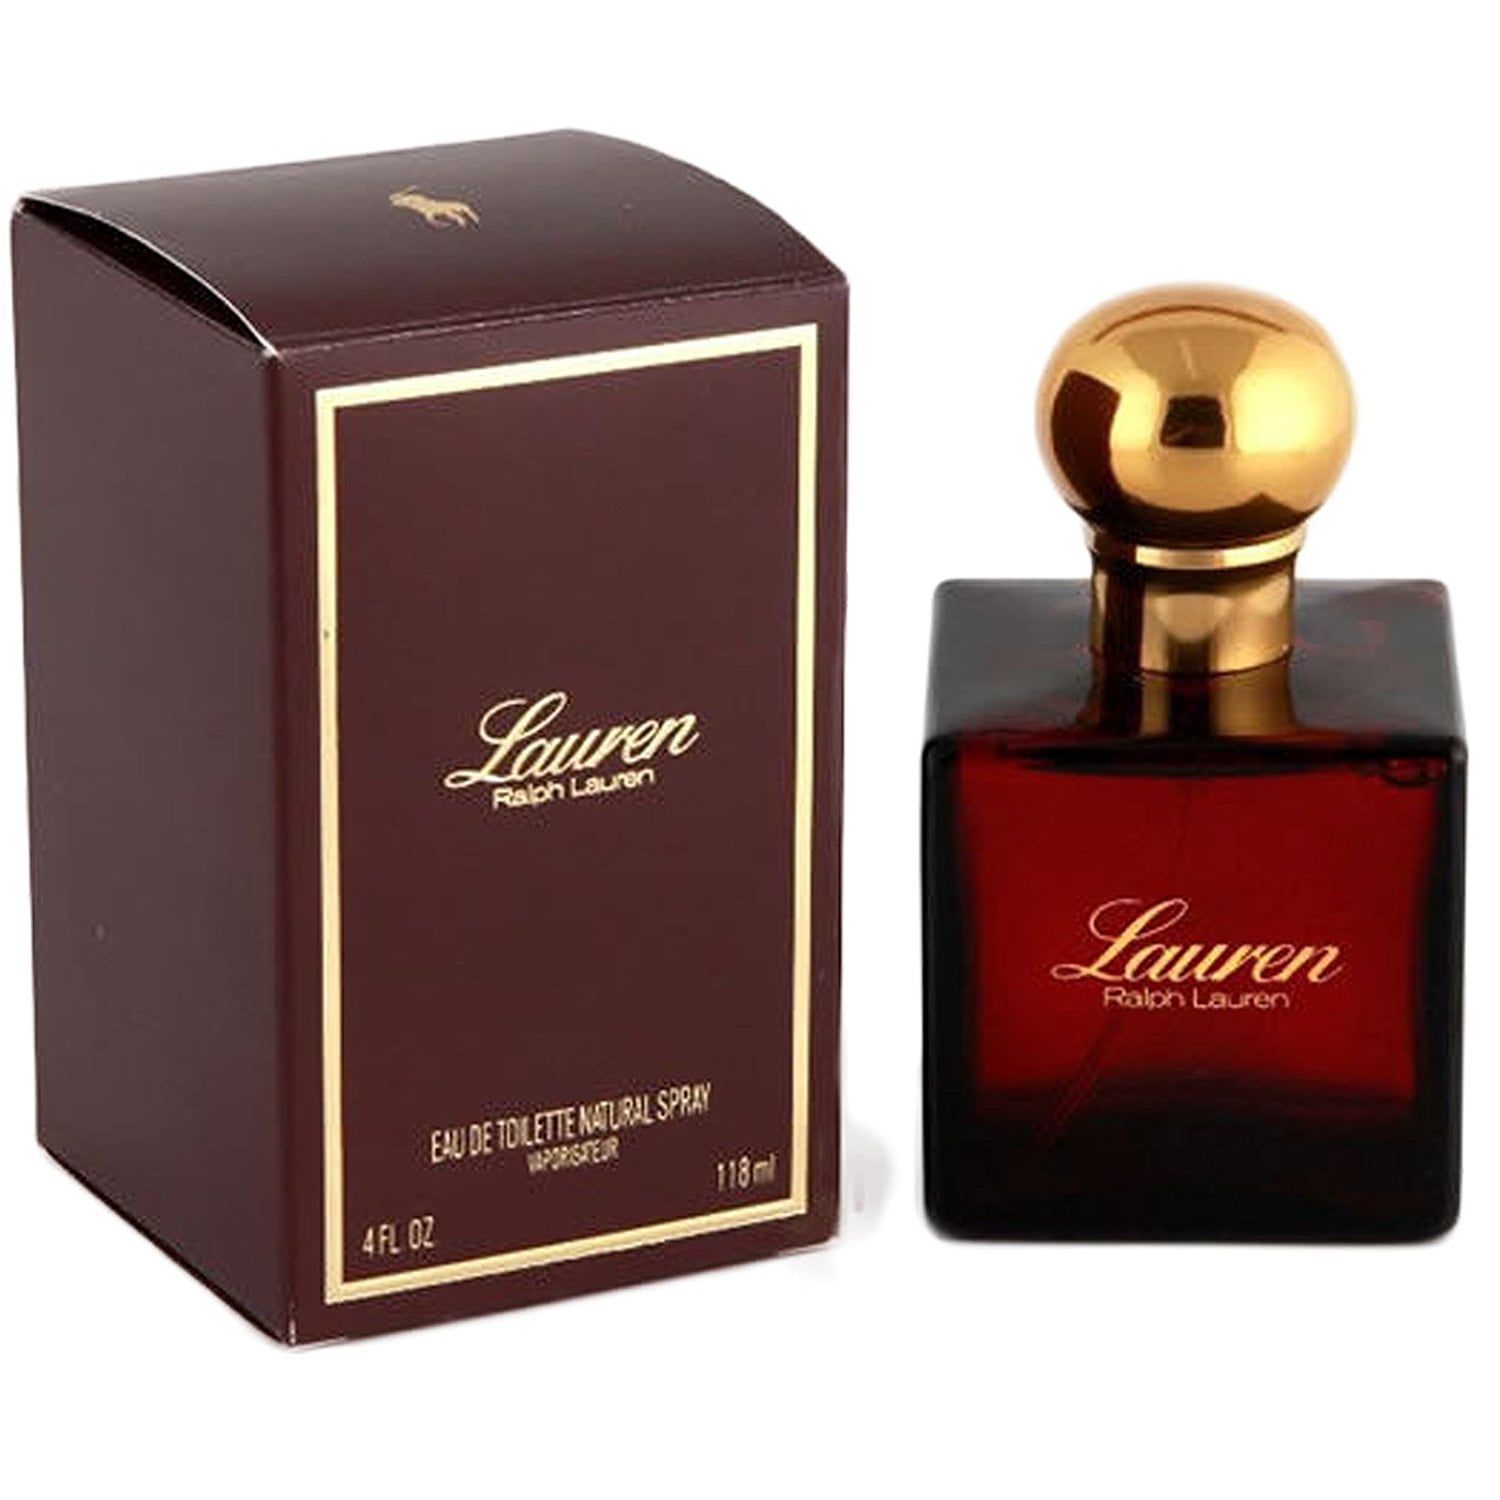 lauren perfume by ralph lauren 4 oz